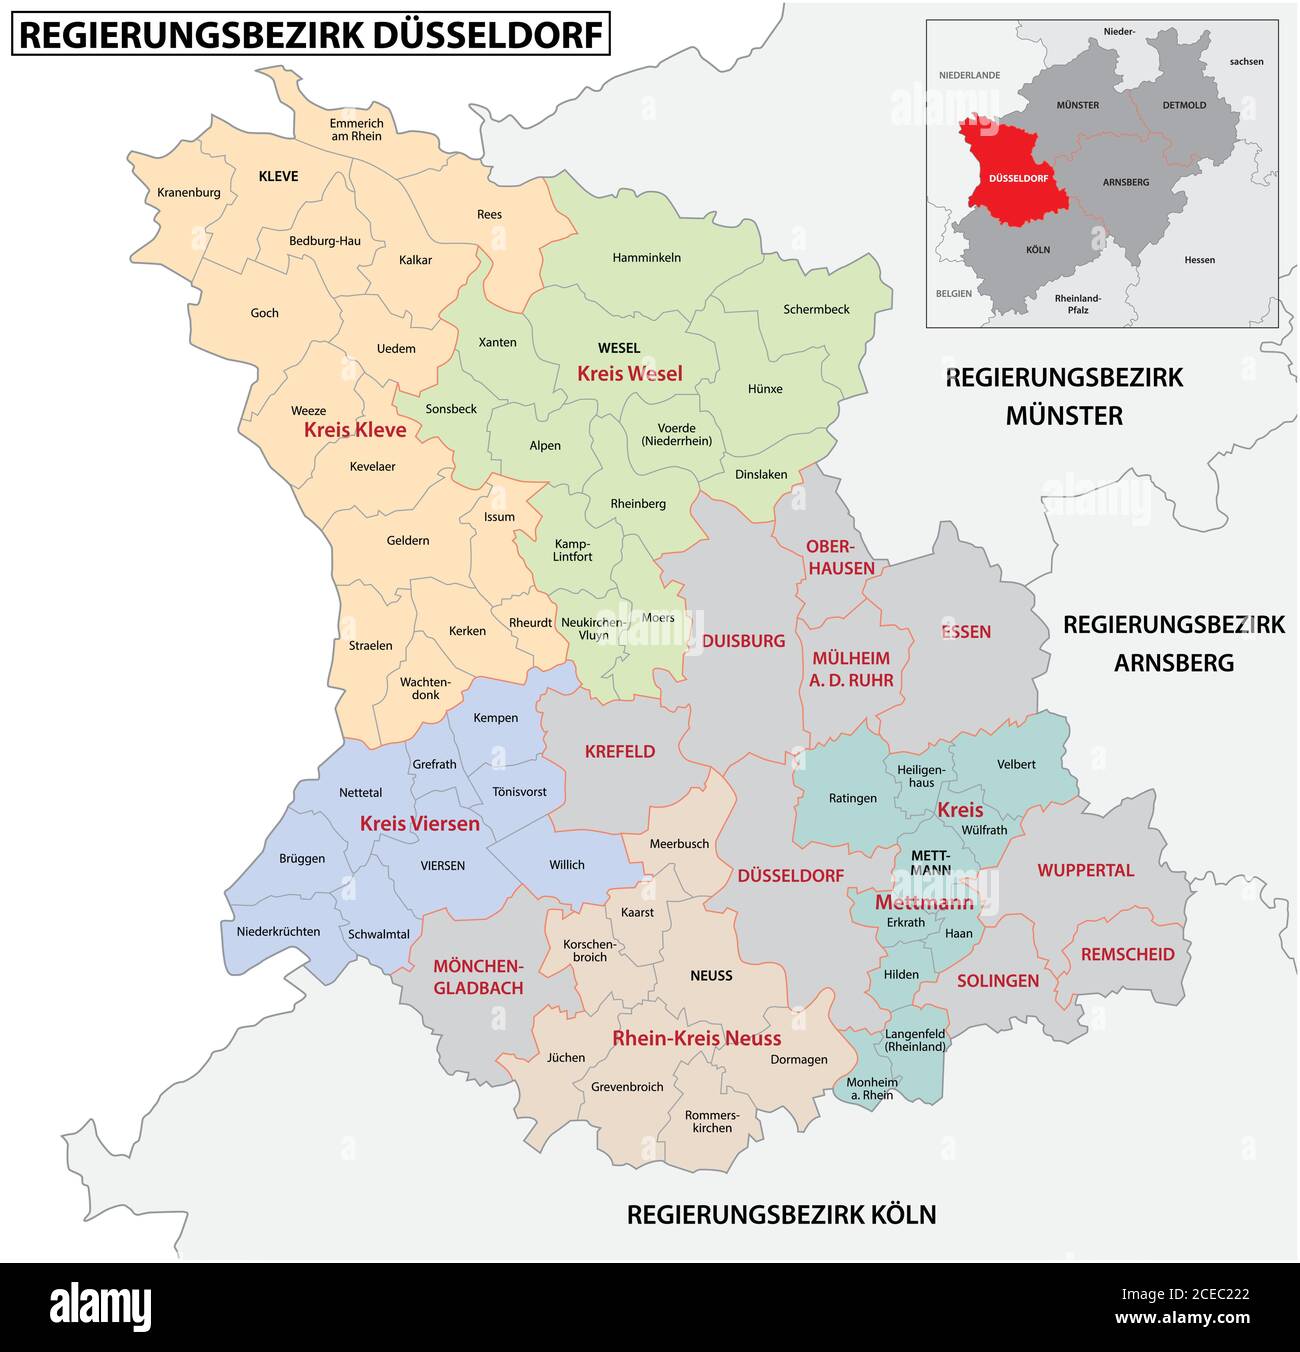 Mappa amministrativa vettoriale della regione di Dusseldorf in lingua tedesca, Renania settentrionale-Vestfalia, Germany.jpg Illustrazione Vettoriale